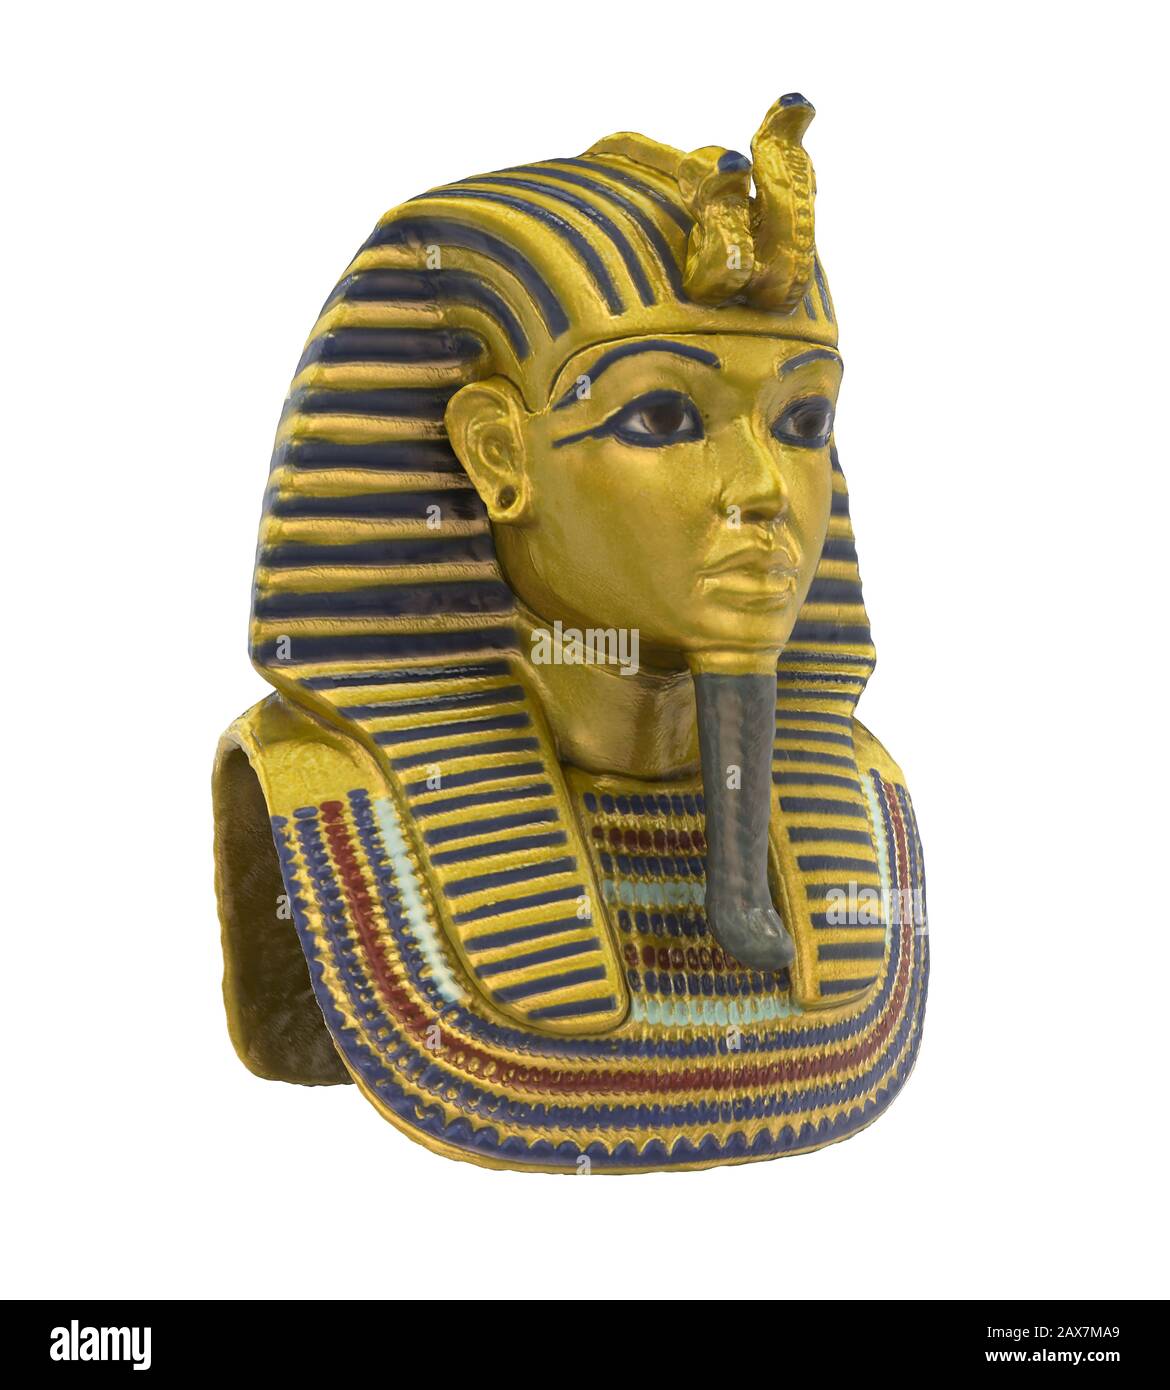 Ägyptischen Pharao Maske isoliert Stockfotografie - Alamy